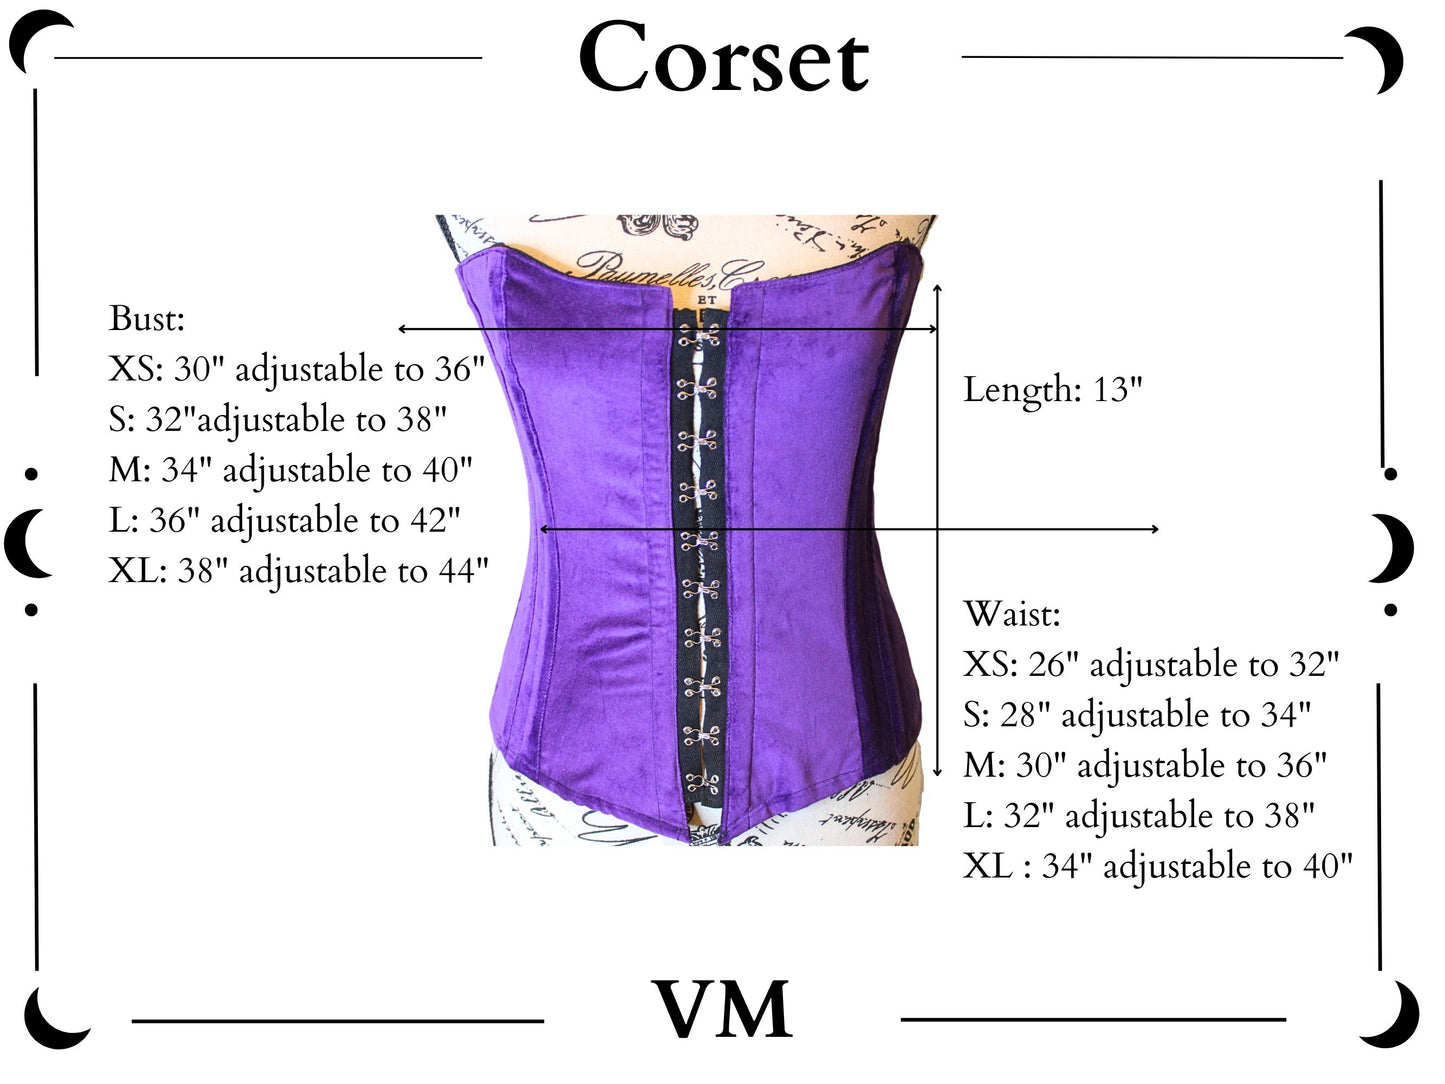 The VM Velvet Corset